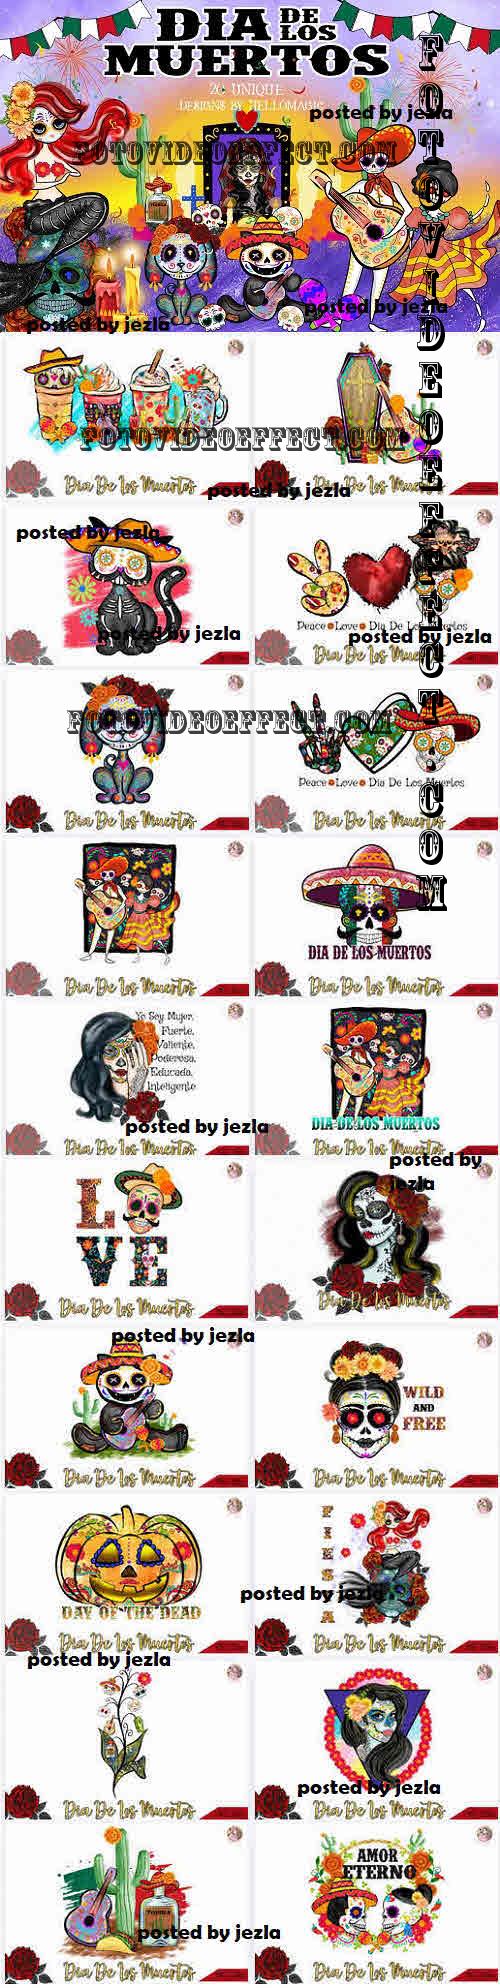 Dia De Los Muertos Bundle - 20 Premium Graphics